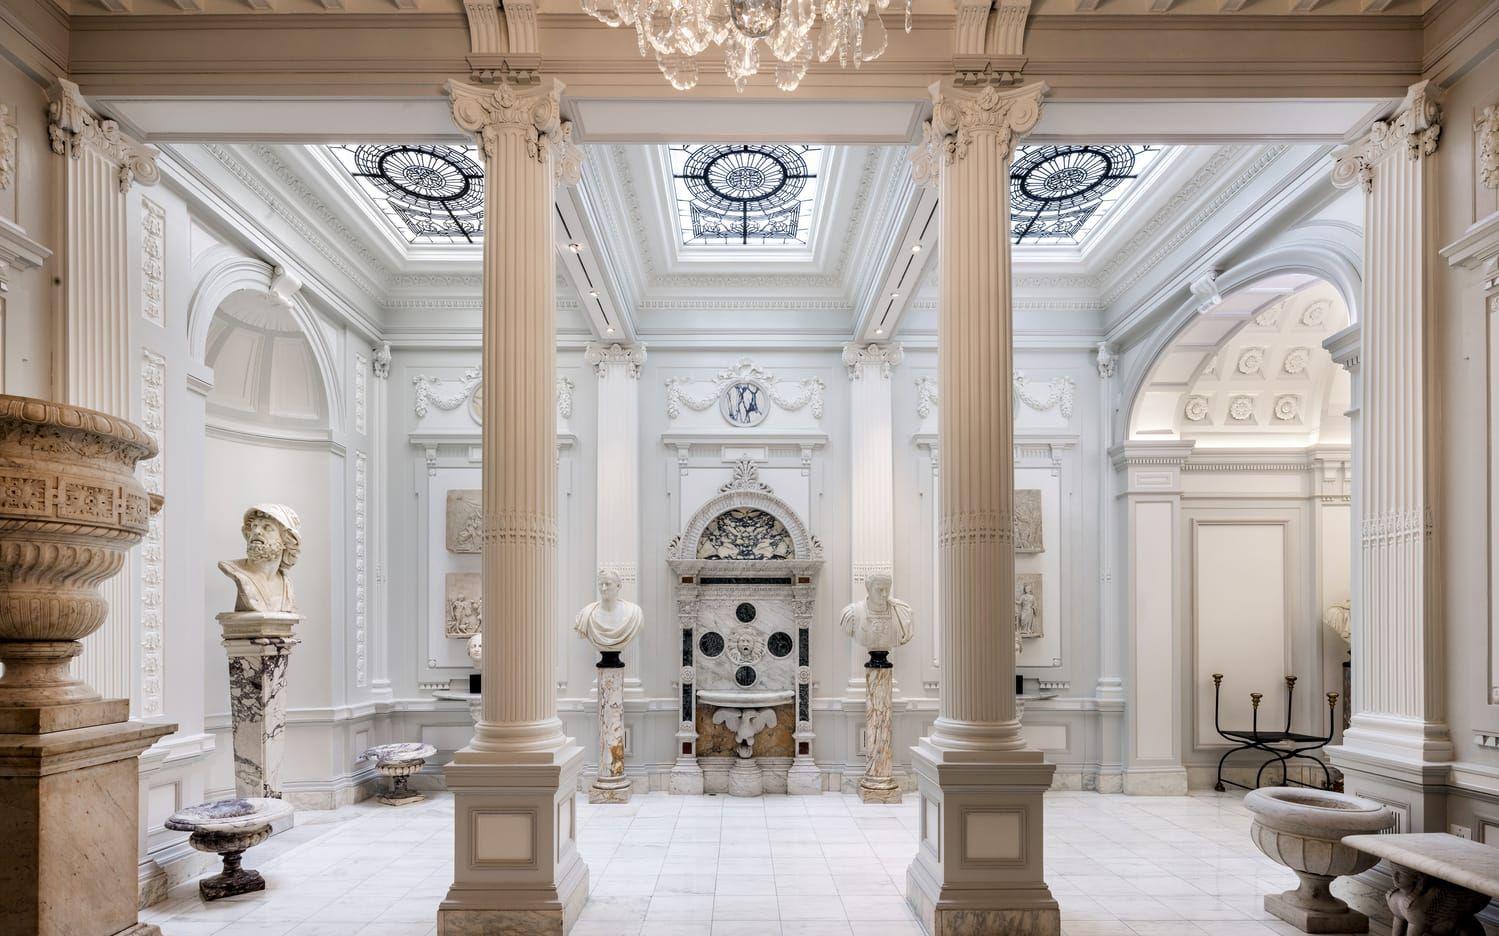 Galleriet är storslaget med sin marmorfontän, statyer, takfönster och urnor.